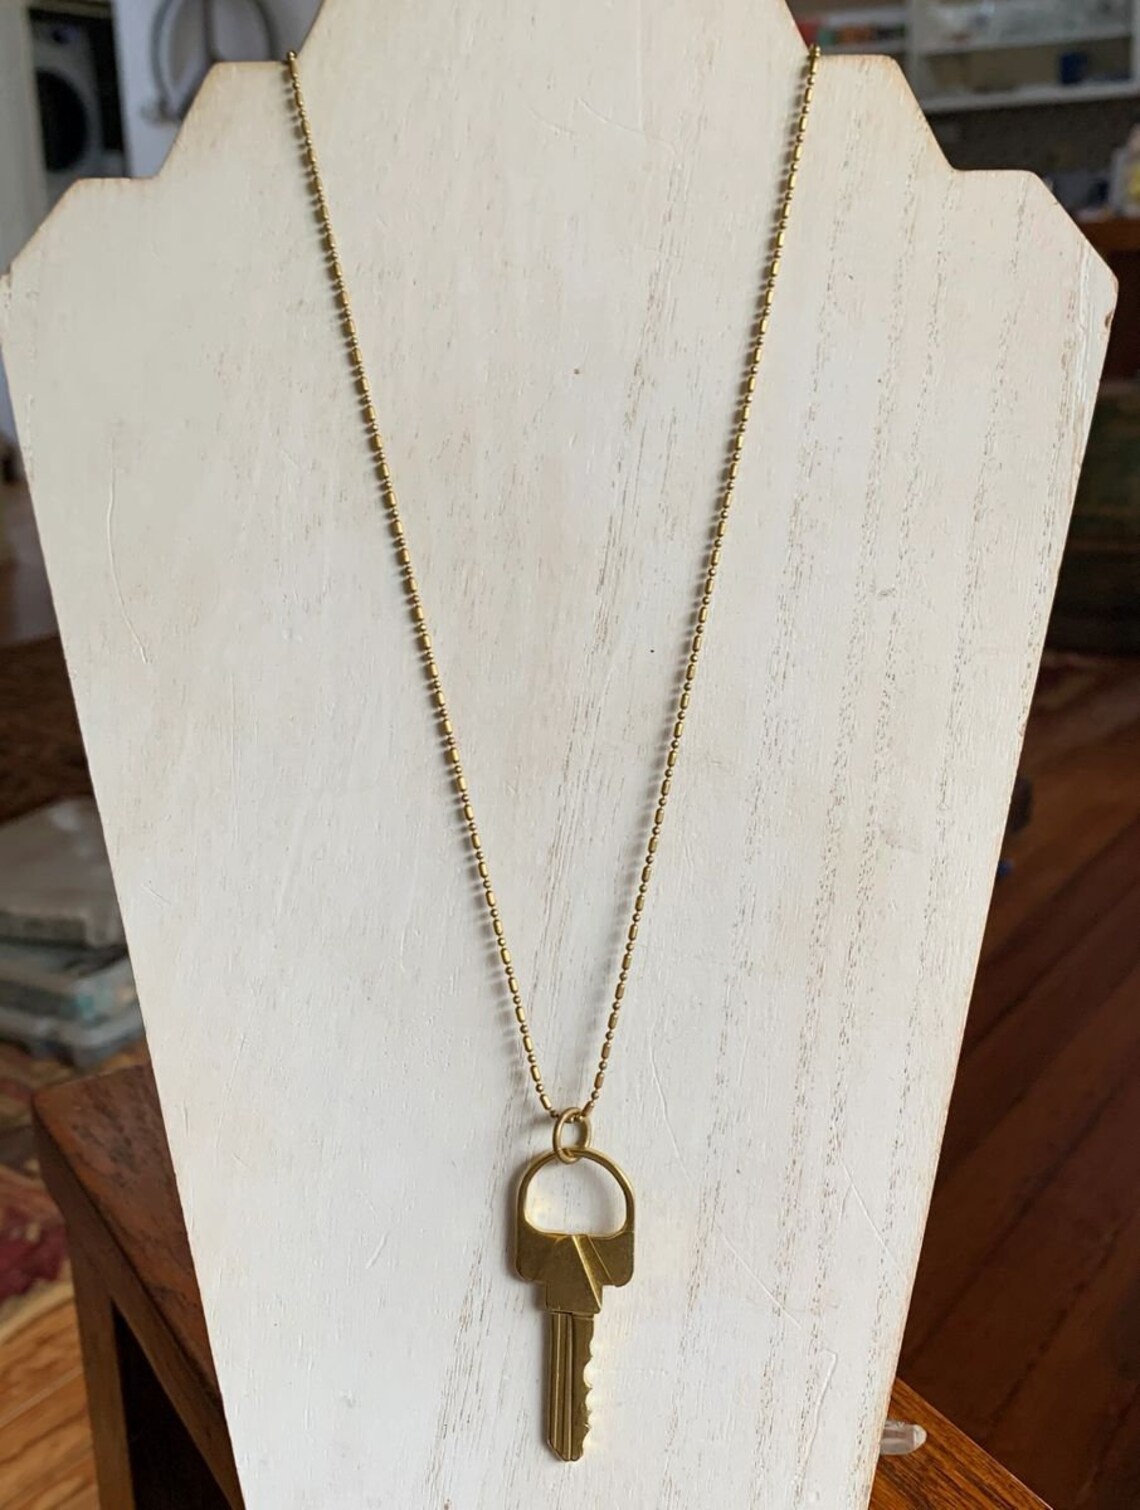 Brass Key Roach Clip necklace | Etsy